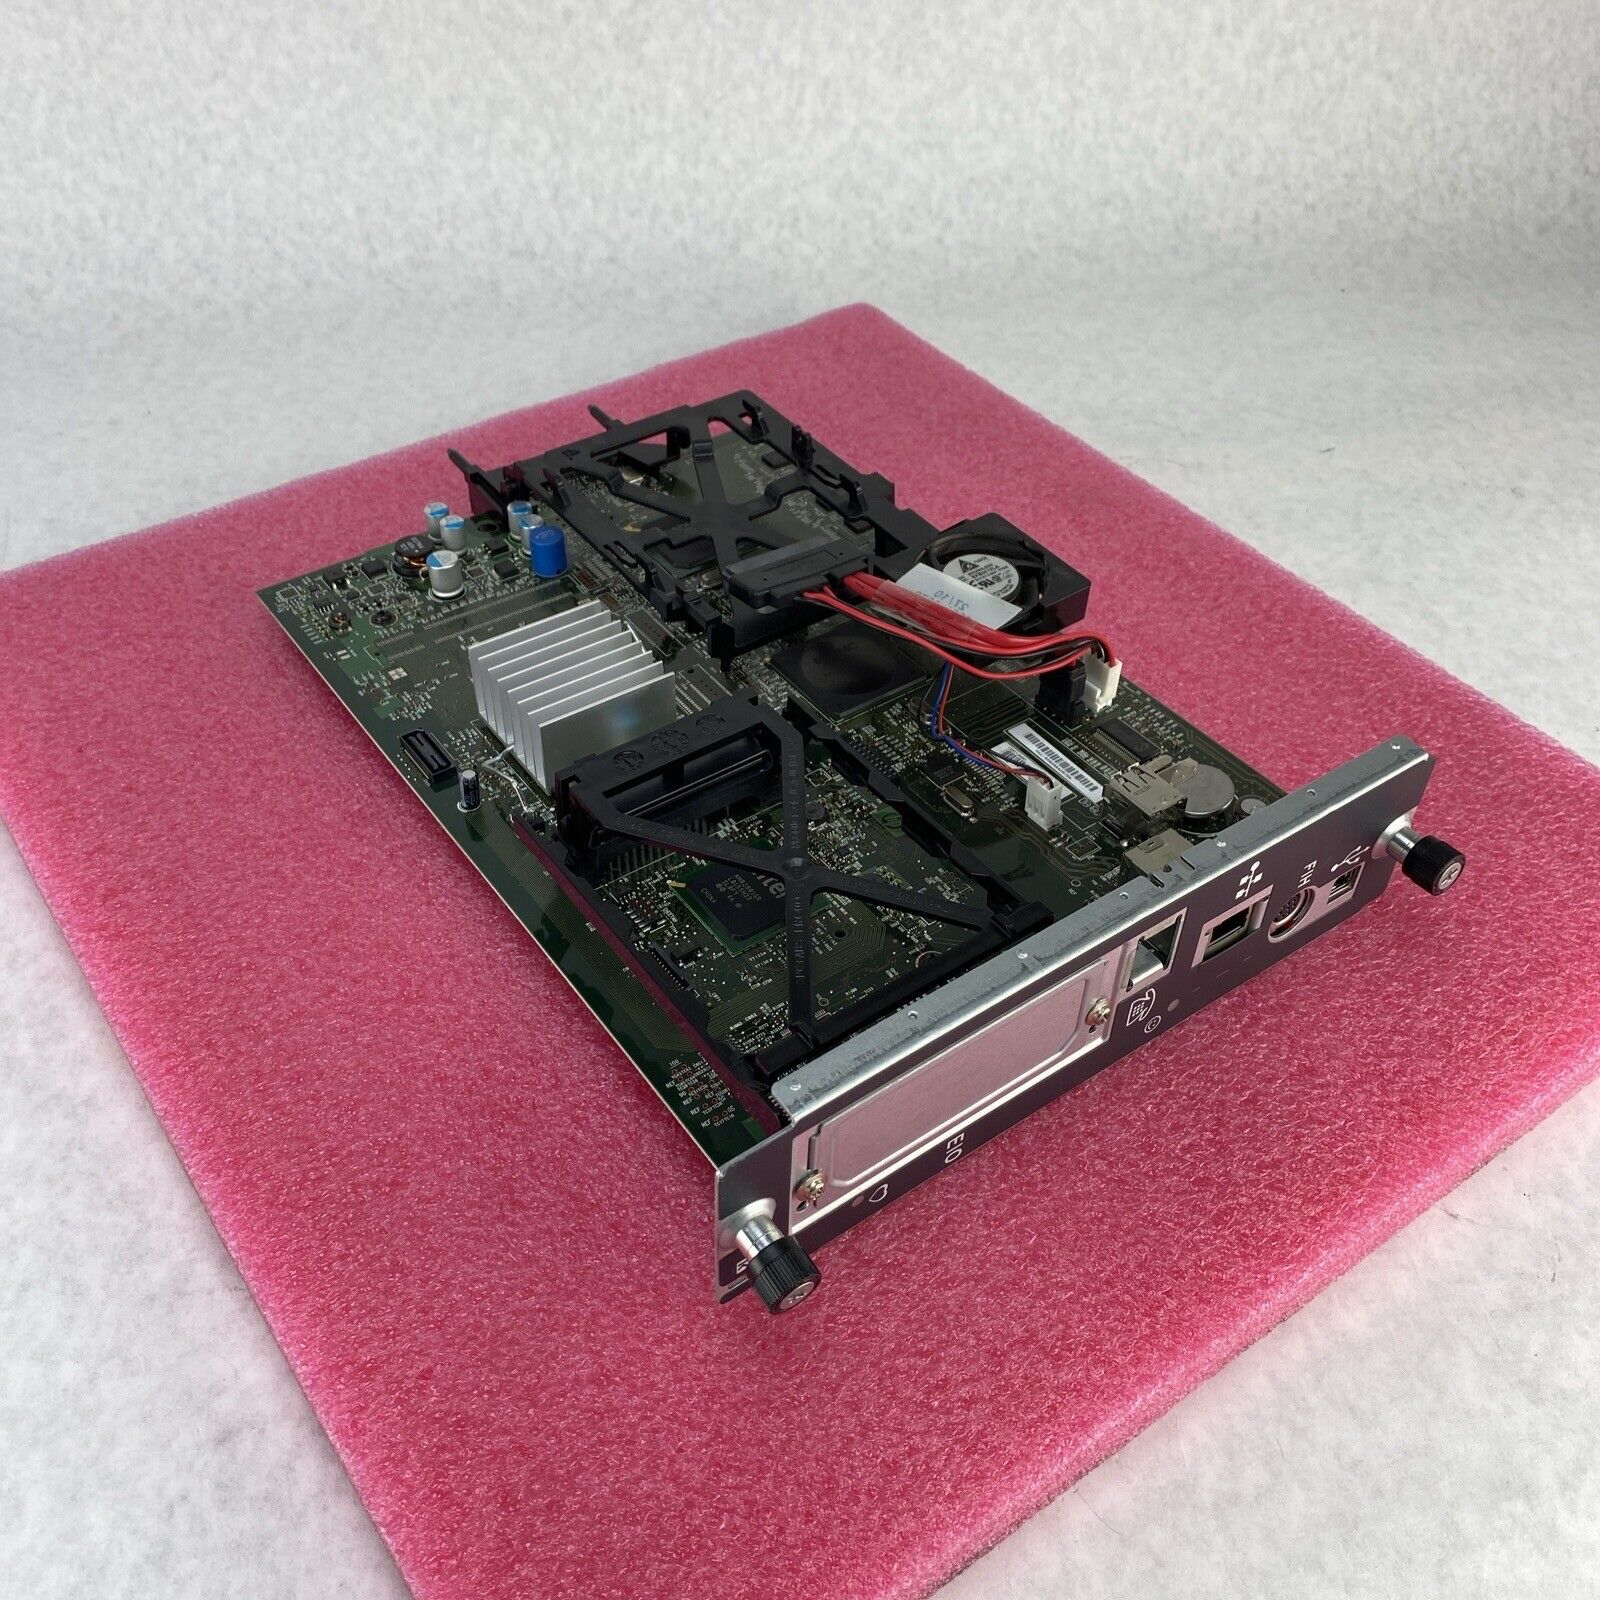 OEM CE871-60001 Formatter Board For HP Color LaserJet CM4540